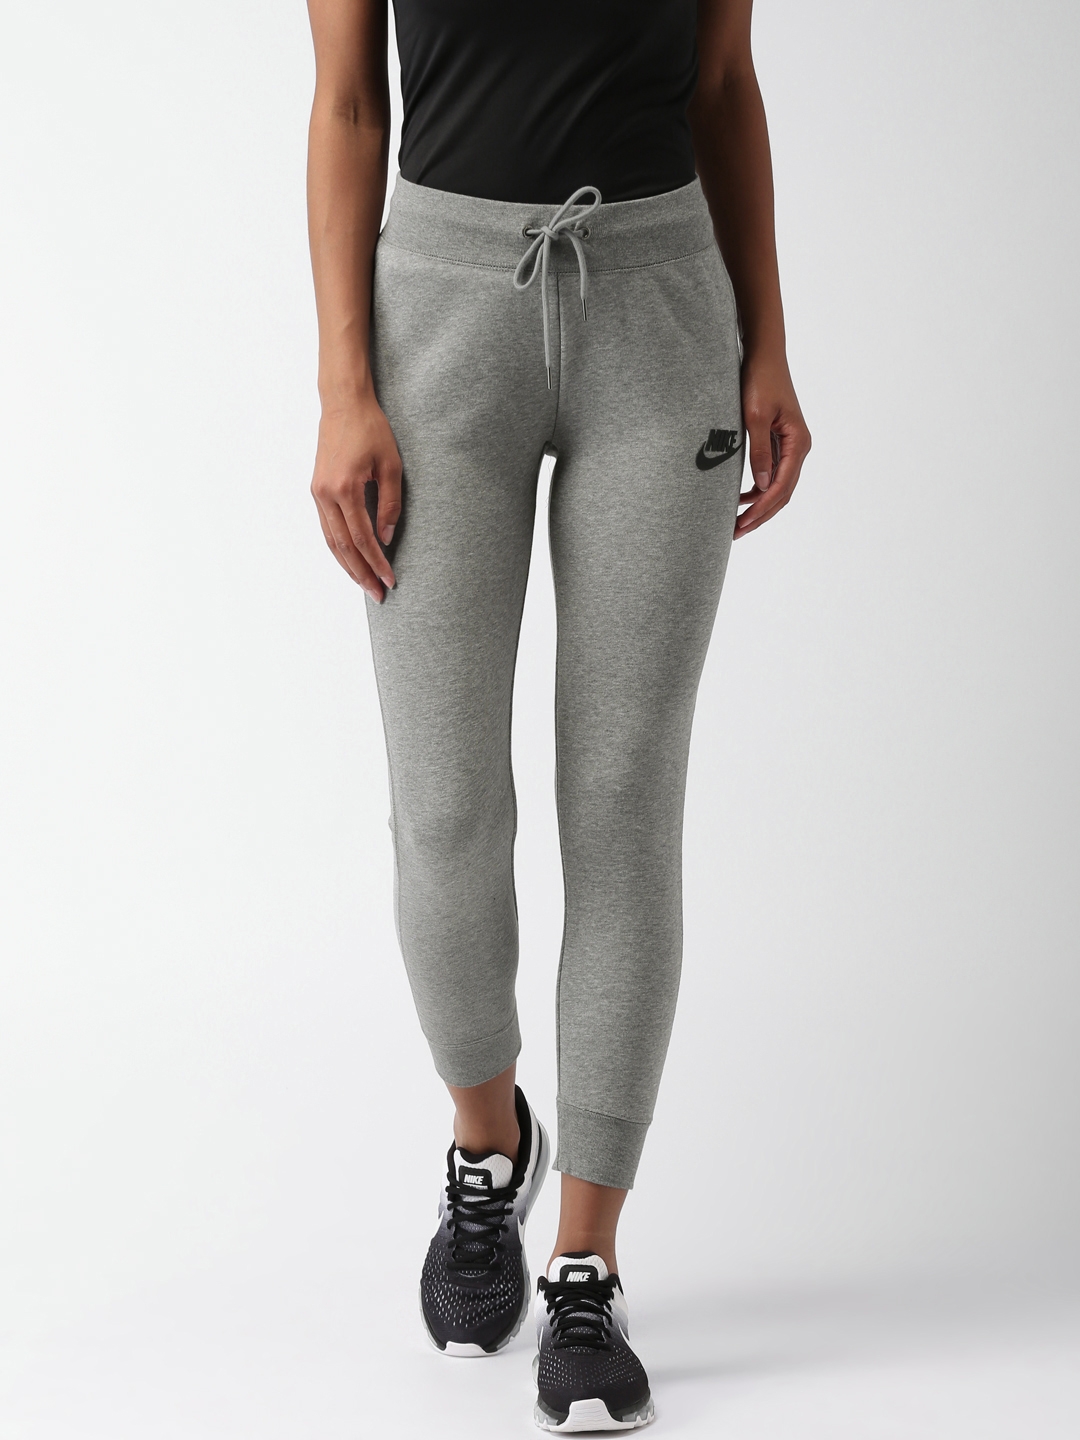 Spodnie Nike Modern Tight Pant - 807356-010 - Opinie